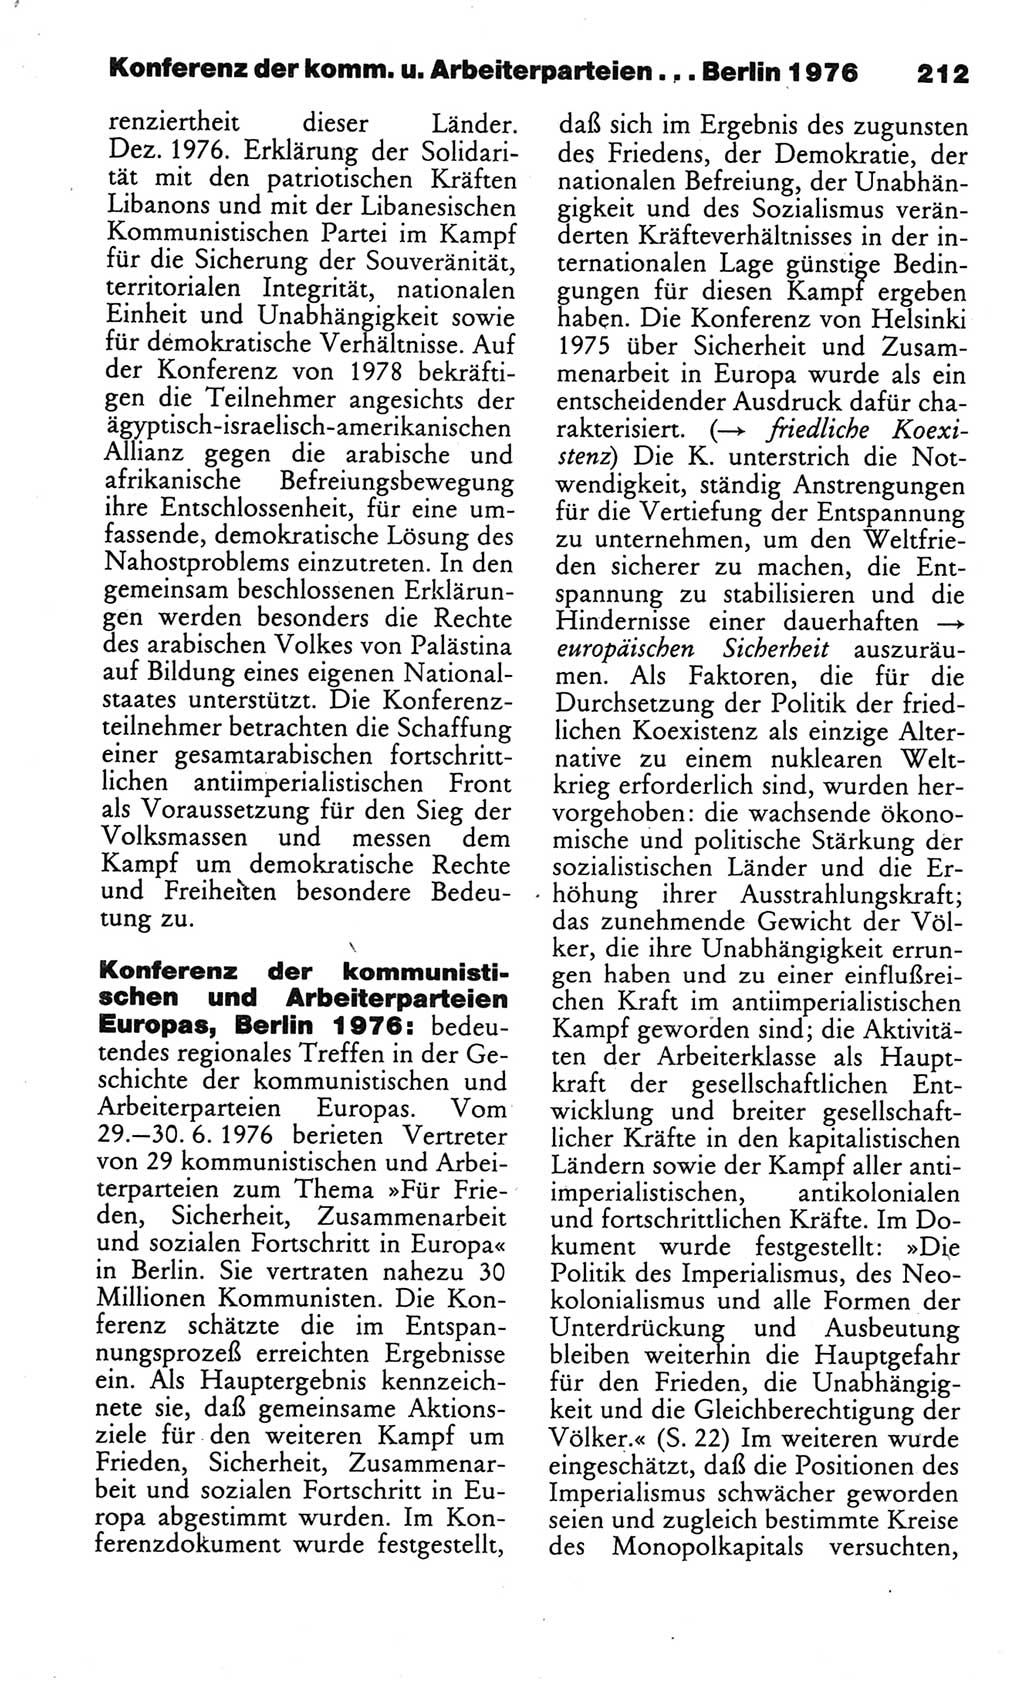 Wörterbuch des wissenschaftlichen Kommunismus [Deutsche Demokratische Republik (DDR)] 1984, Seite 212 (Wb. wiss. Komm. DDR 1984, S. 212)